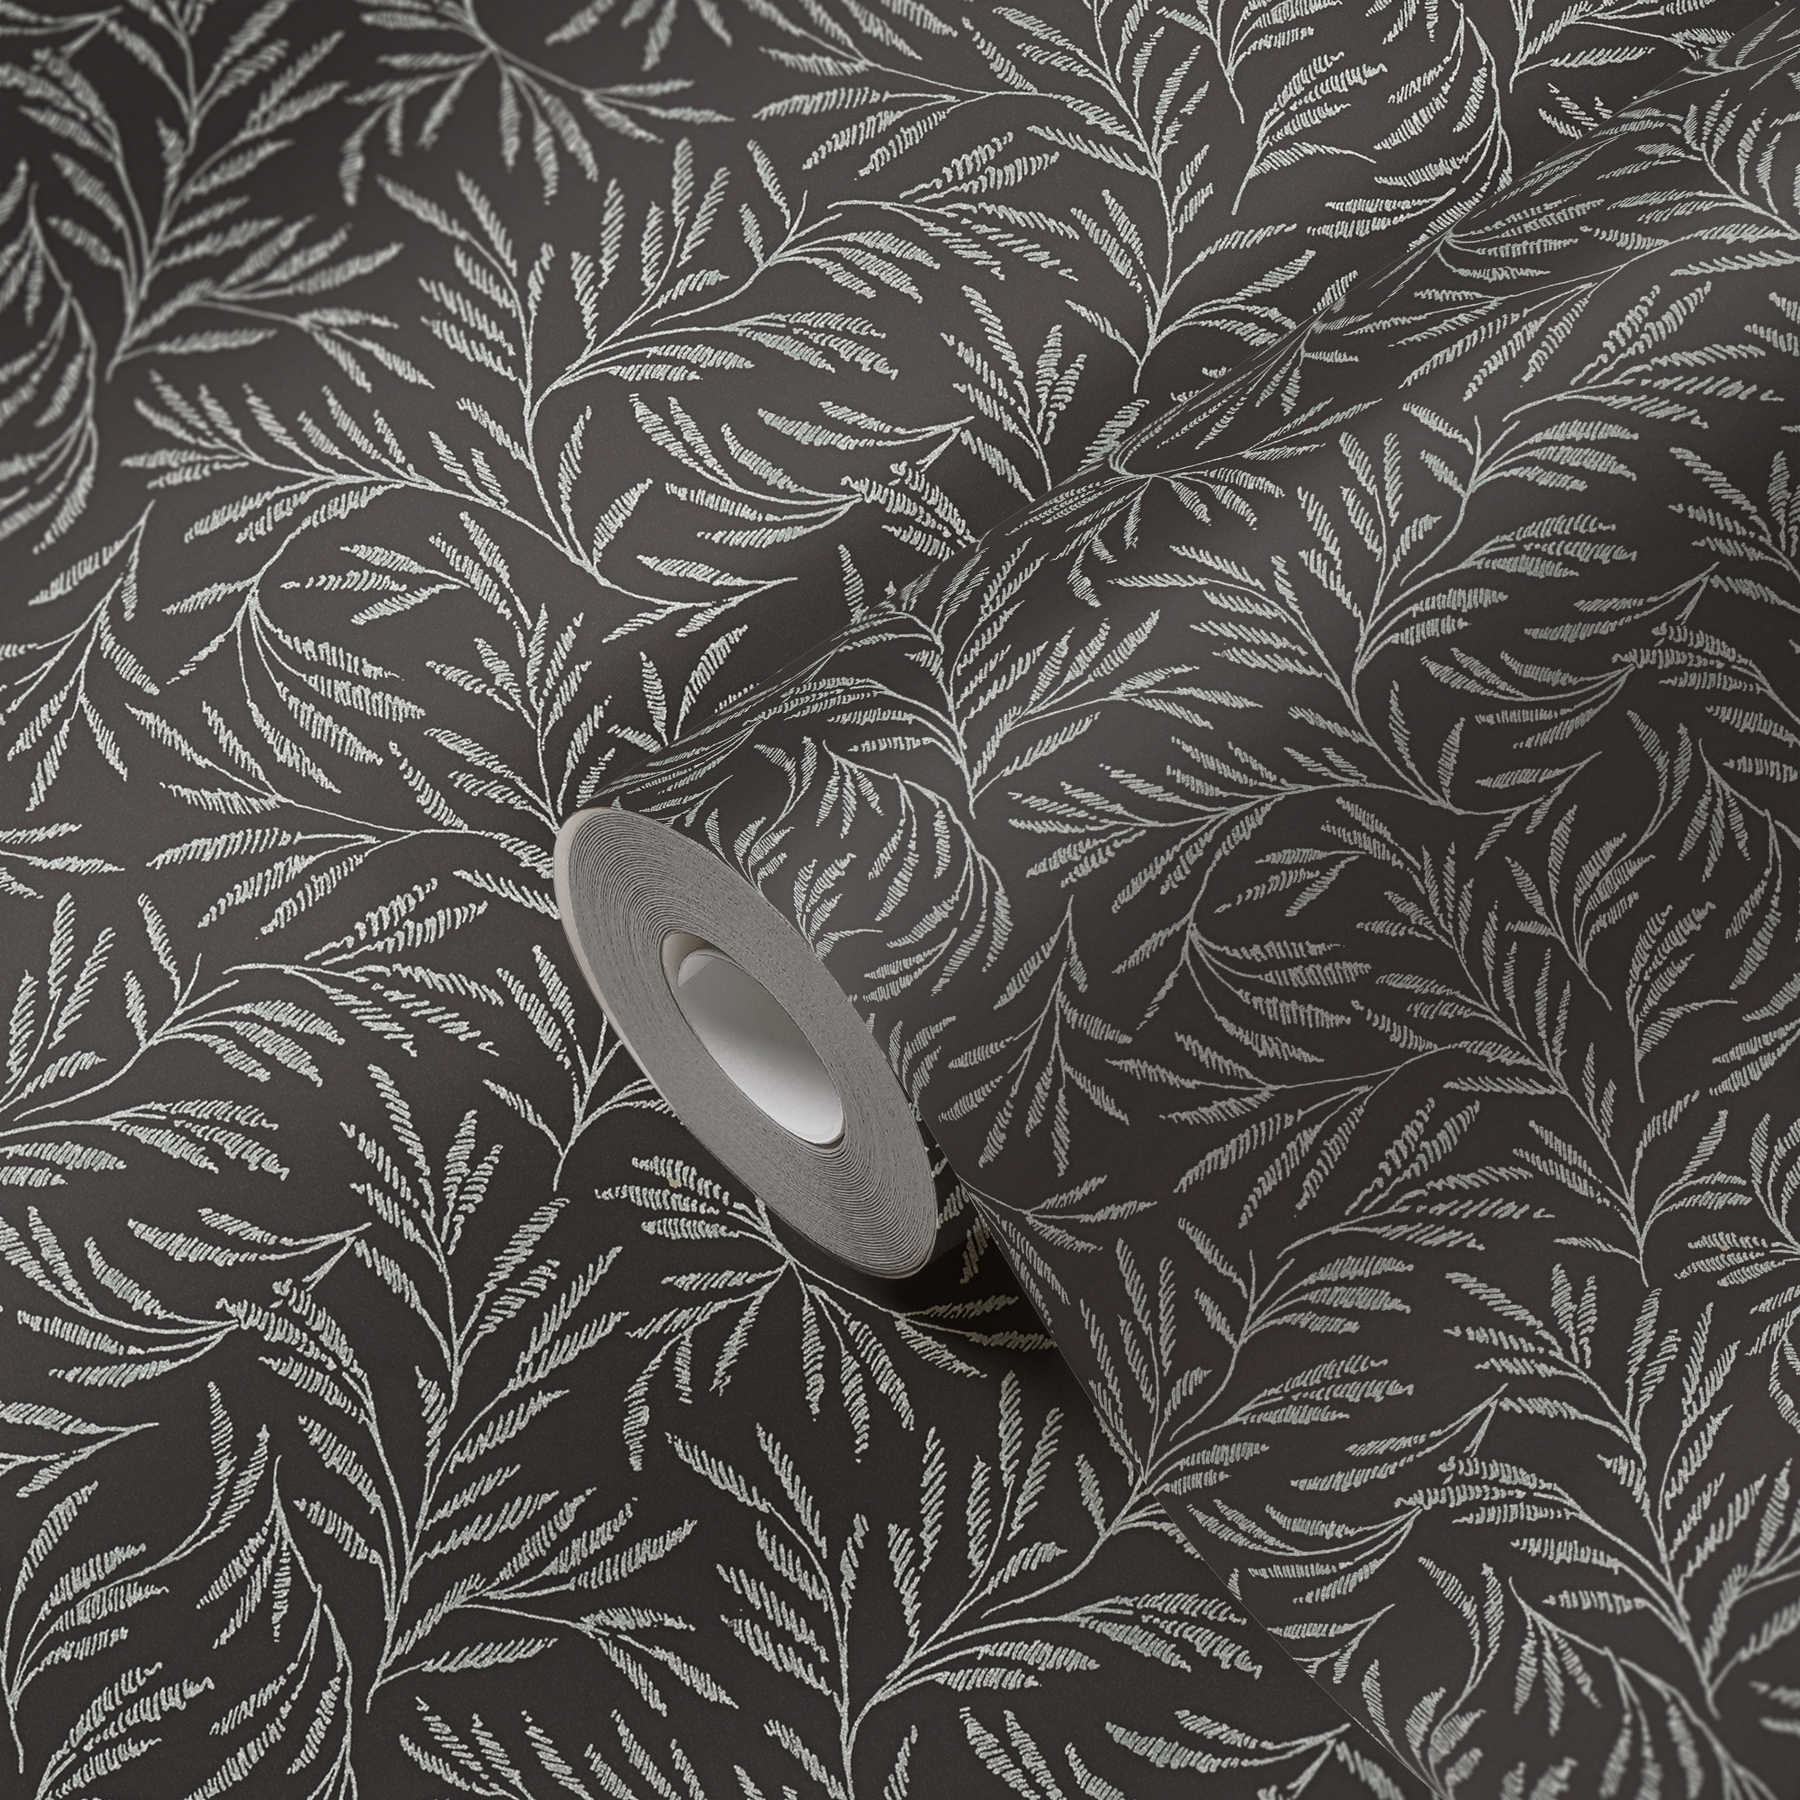             Papel pintado Vlie patrón metálico con zarcillos de hojas - metálico, negro
        